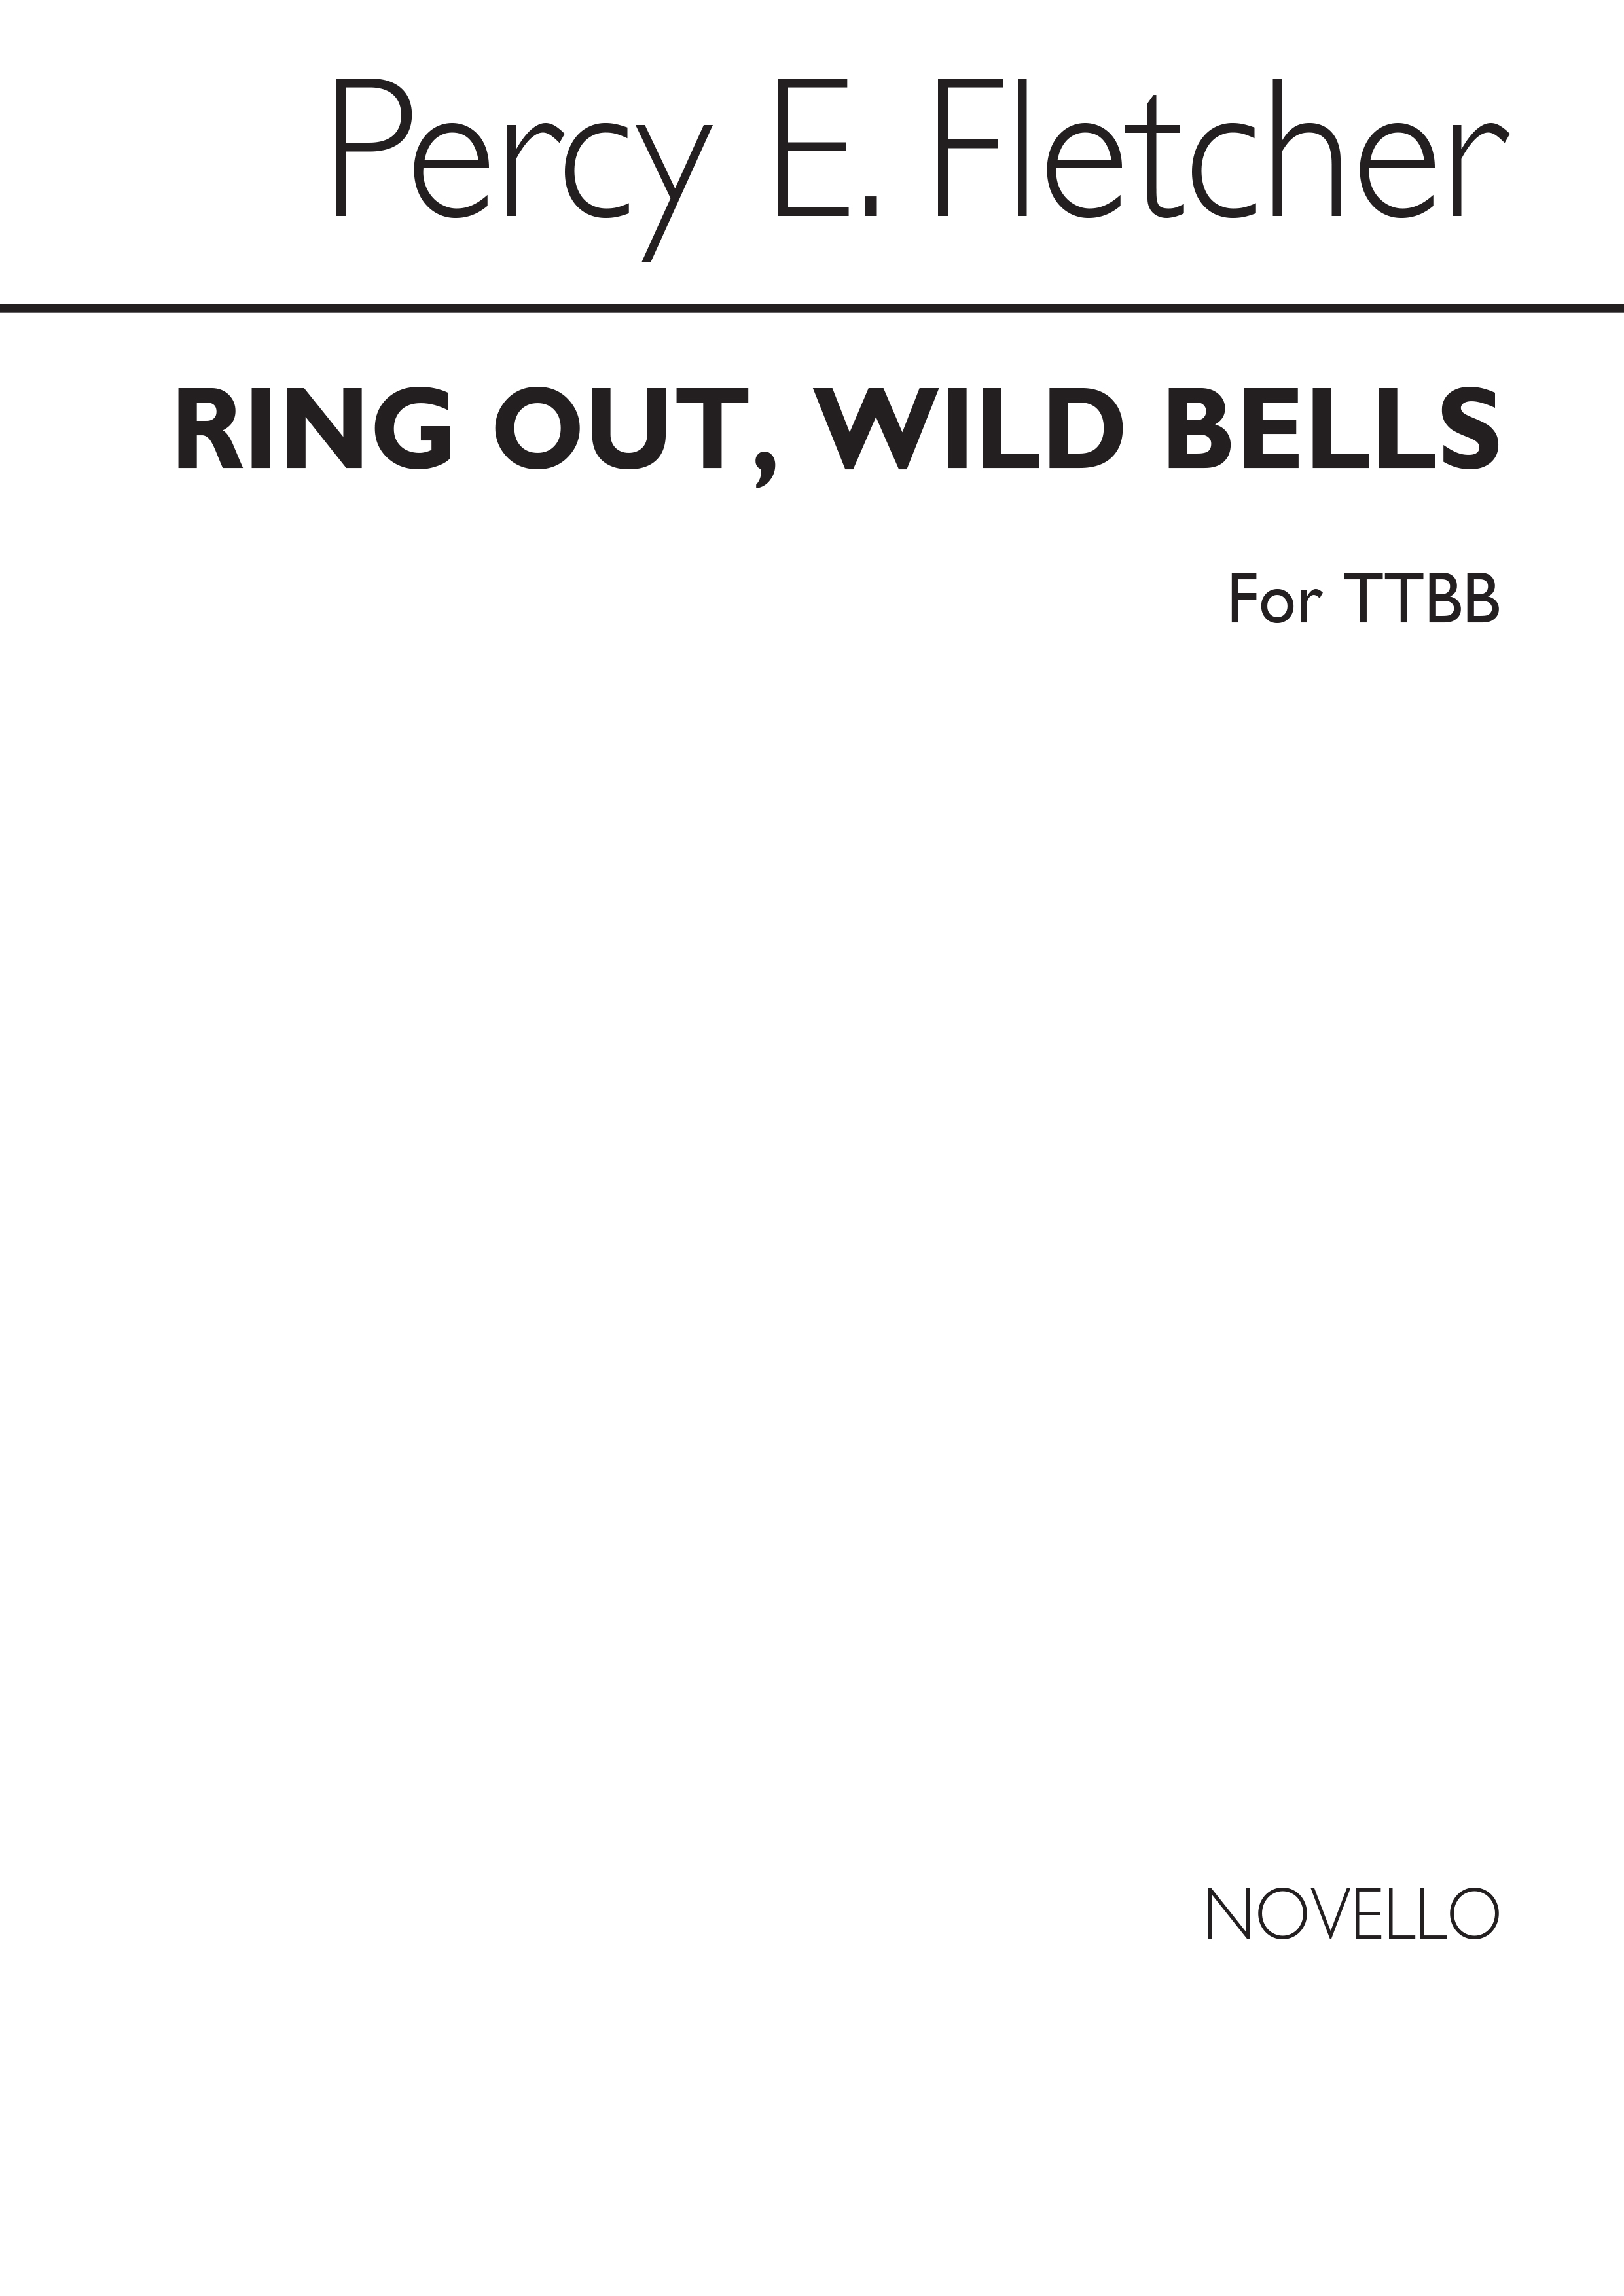 Fletcher Ring Out Wild Bells Ttbb